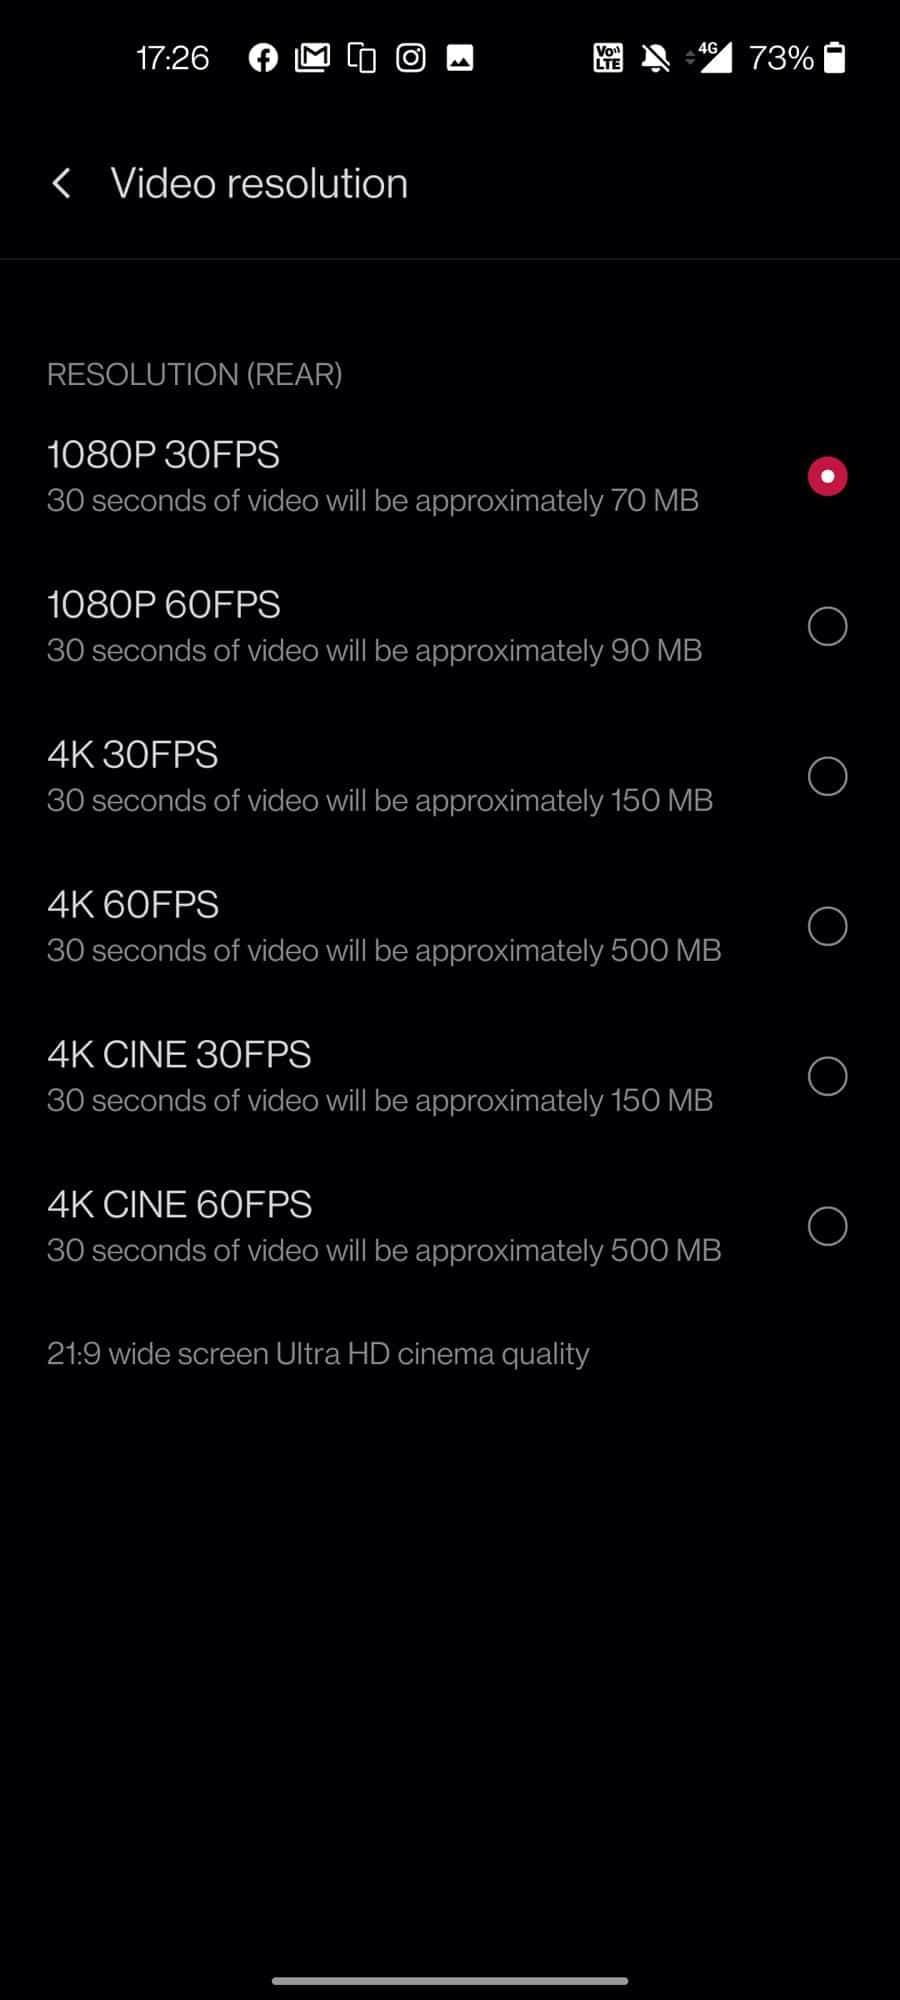 รีวิว OnePlus 8T 5G ประสบการณ์เหนือชั้น เล่นเกมลื่นปรับได้สุด เสียงดีลำโพงคู่ จอสวยสมูธสีตรง 26